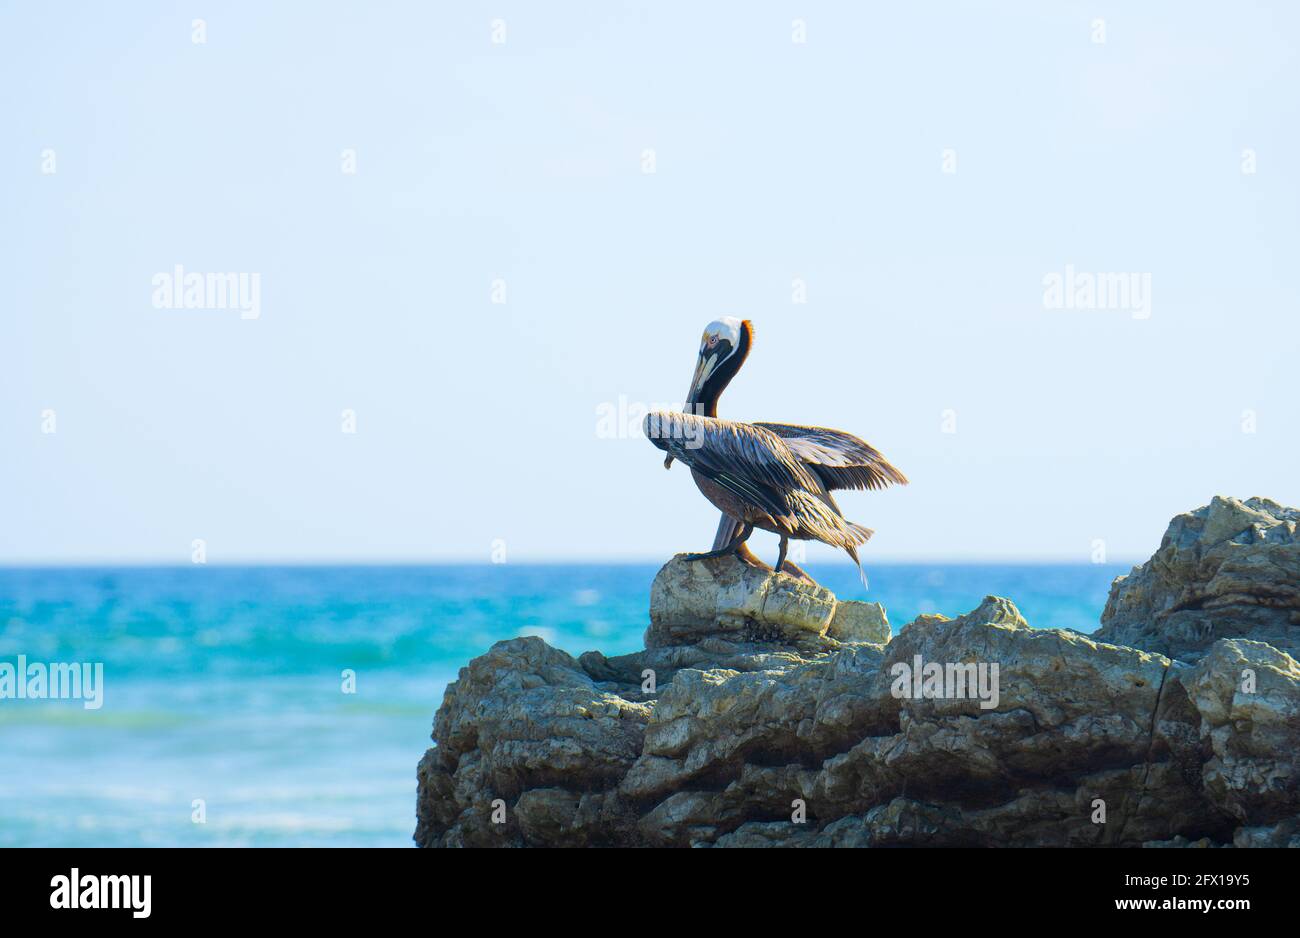 Pélican brun (pelecanus occidentalis) reposant sur une roche sur fond océanique. Faune de la province de Puntarenas, Costa Rica Banque D'Images